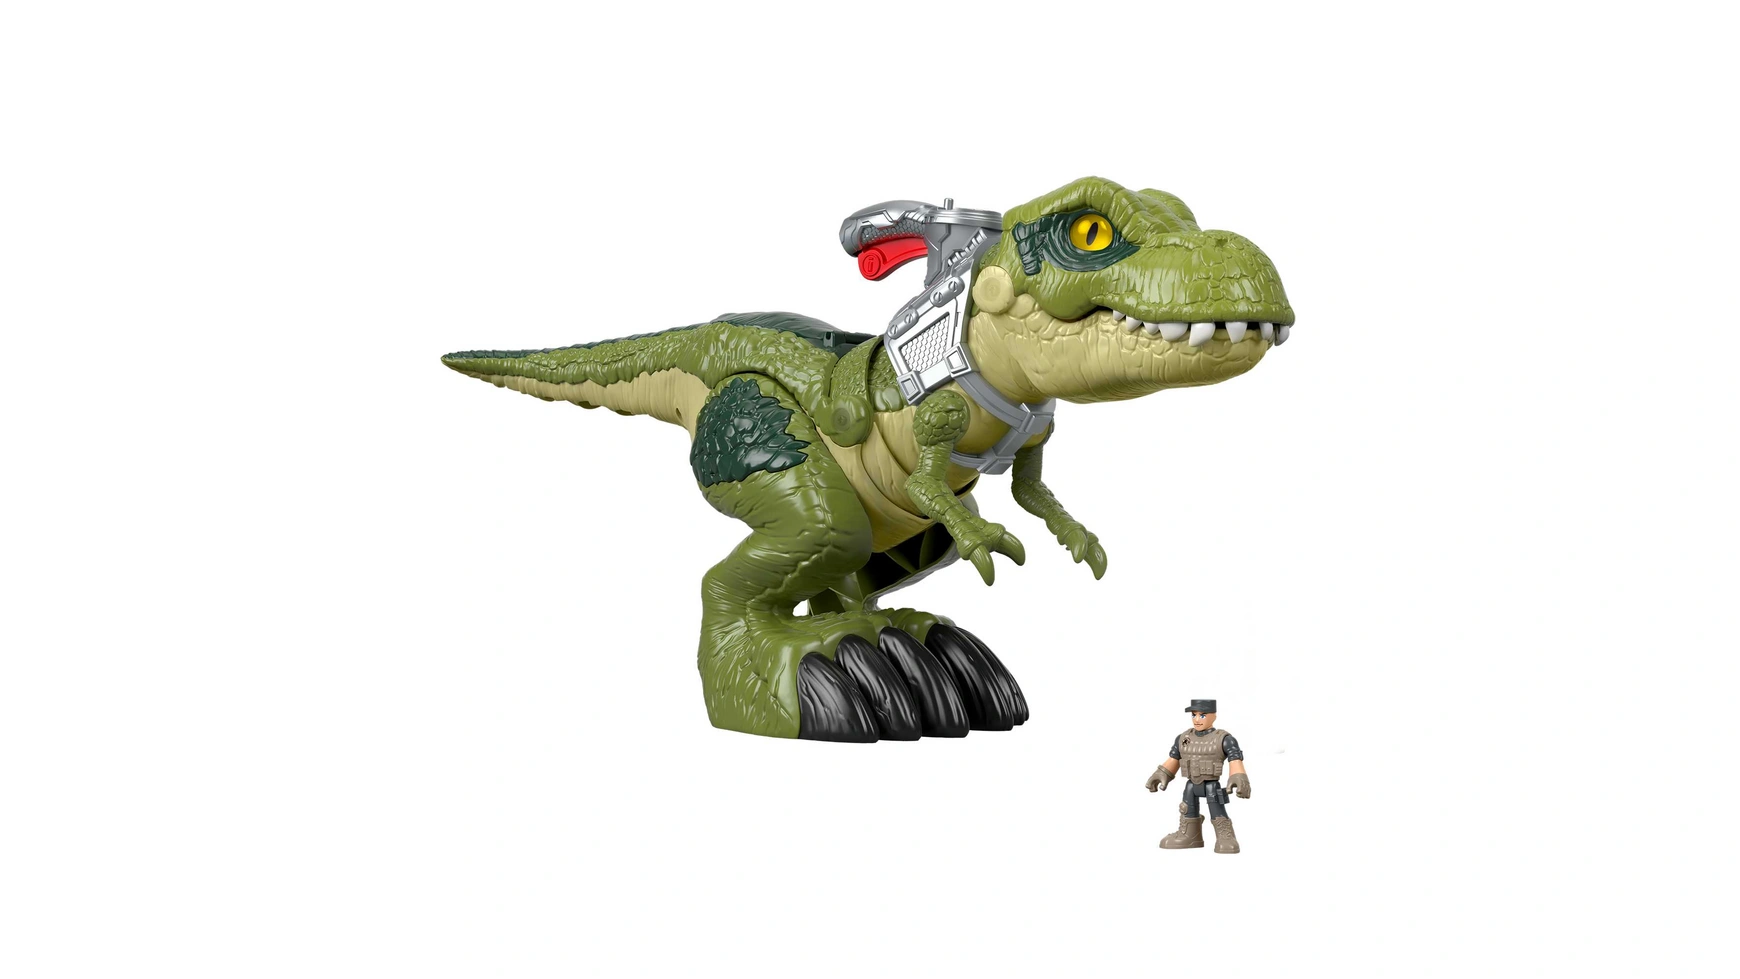 Игрушка-динозавр Fisher-Price Imaginext Jurassic World Hungry T-Rex детская имитация фигурки животных реалистичный динозавр юрского периода модель мира игрушка рэптор подарок на день рождения для мальчи